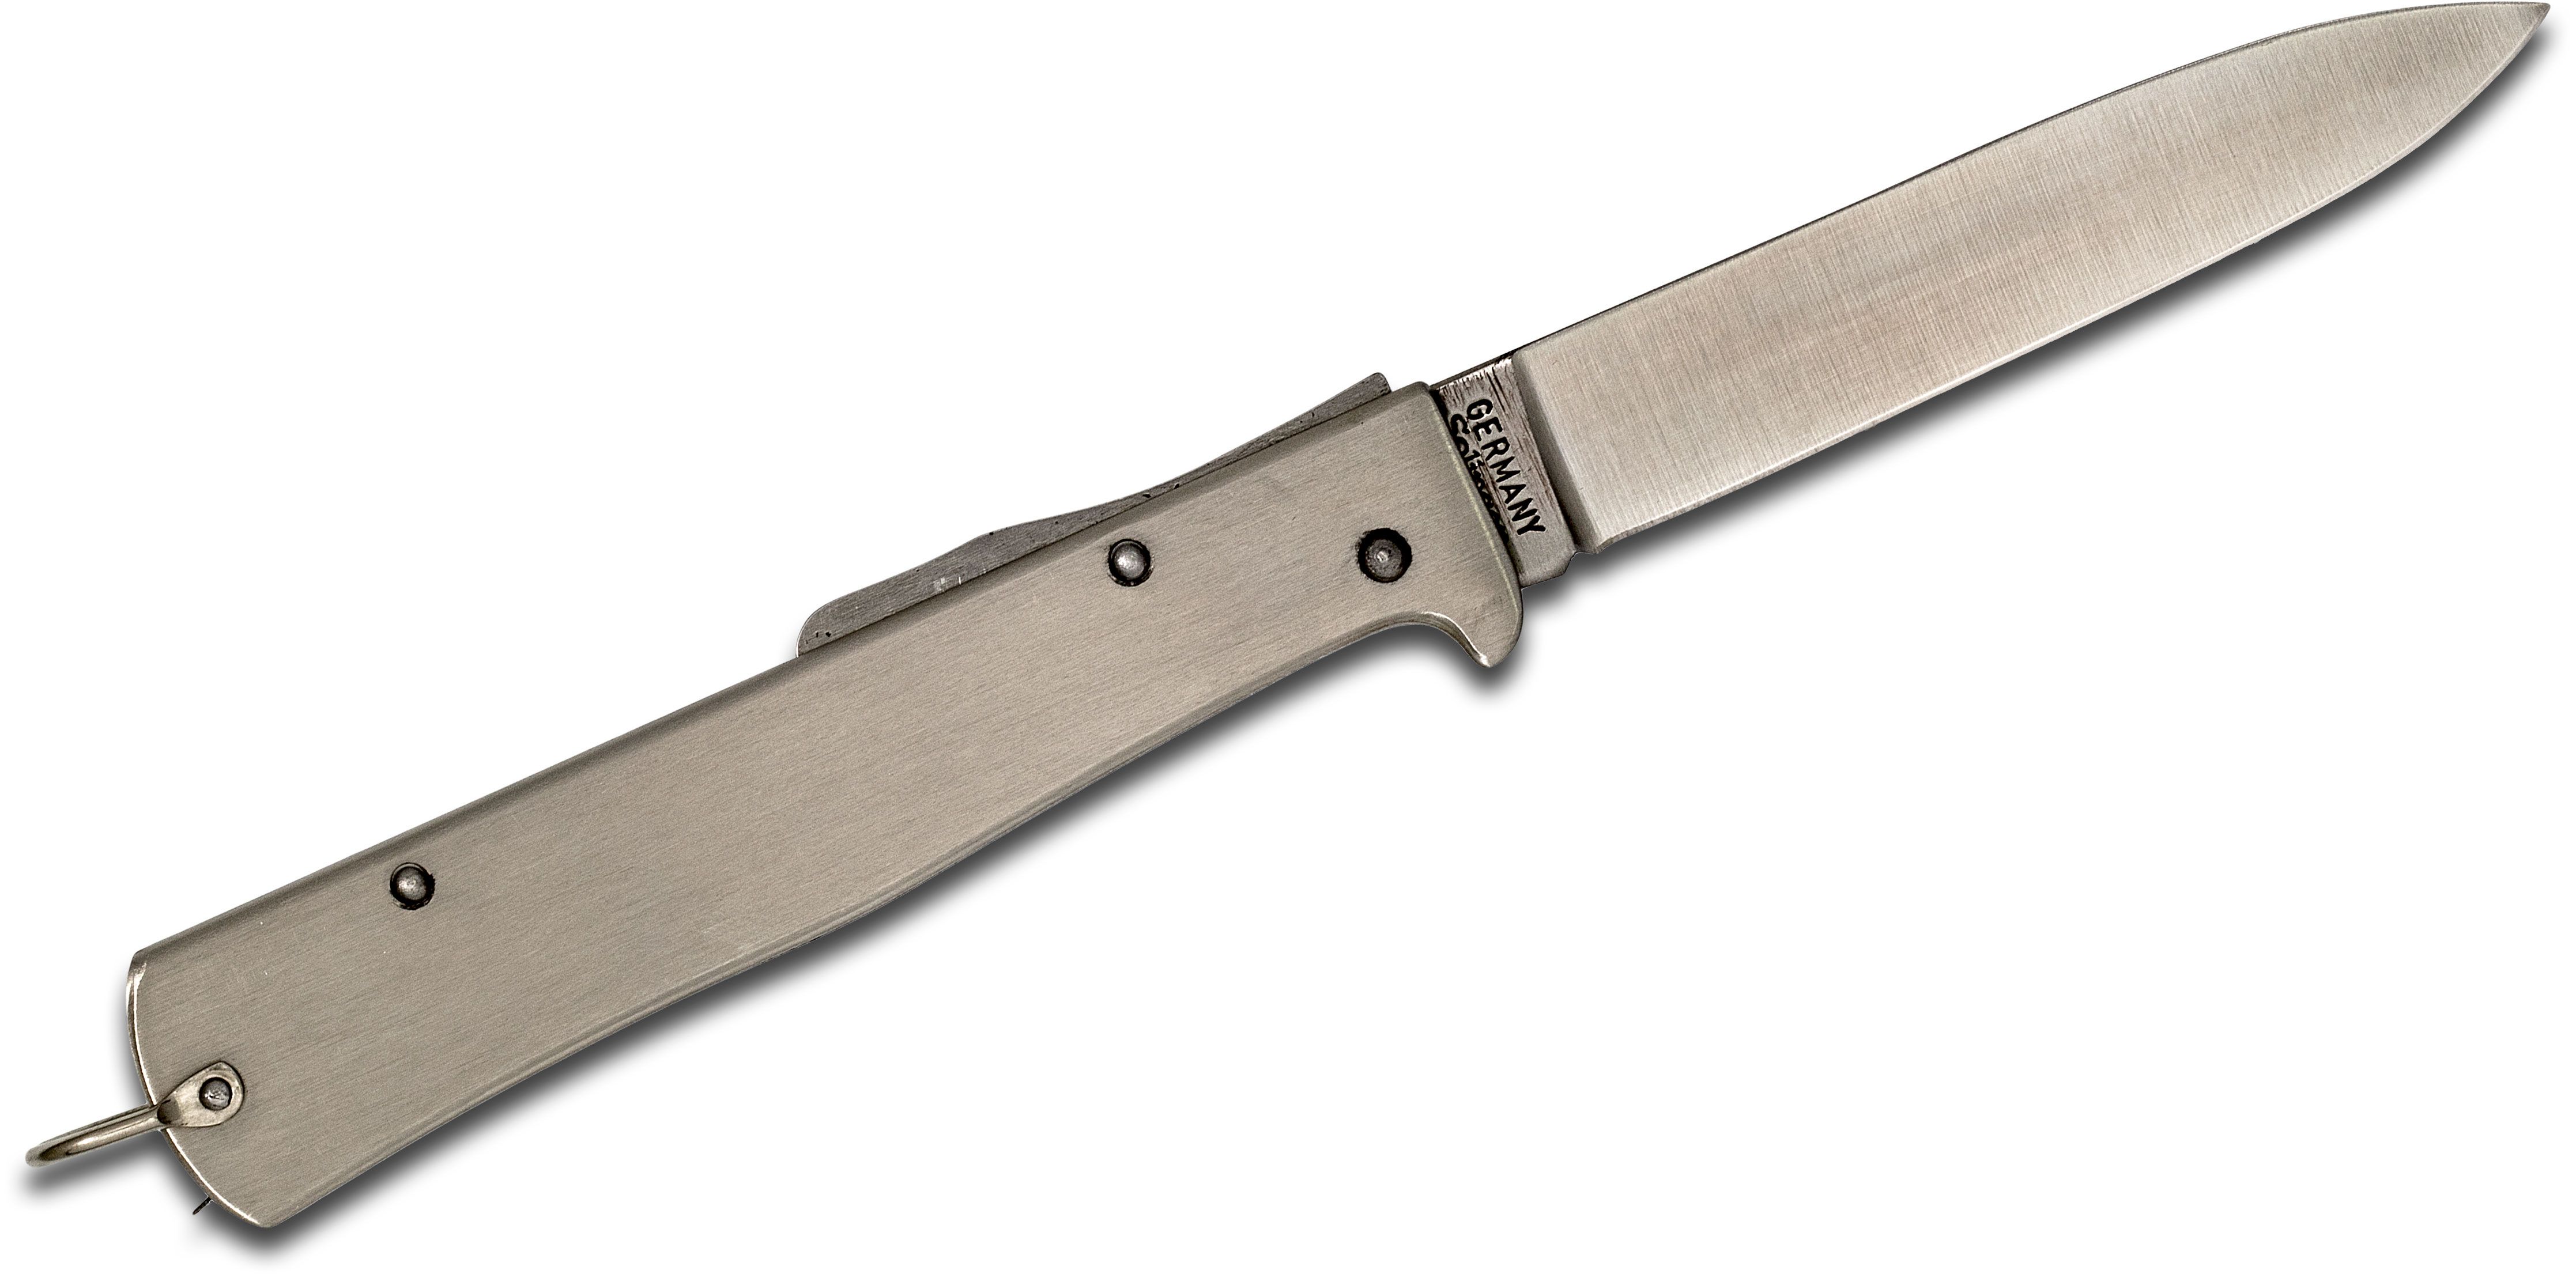 Otter Mercator Solingen K55 Lockback Folding Knife 3.5 Plain Stainless  Steel Blade and Handles - KnifeCenter - K10826R